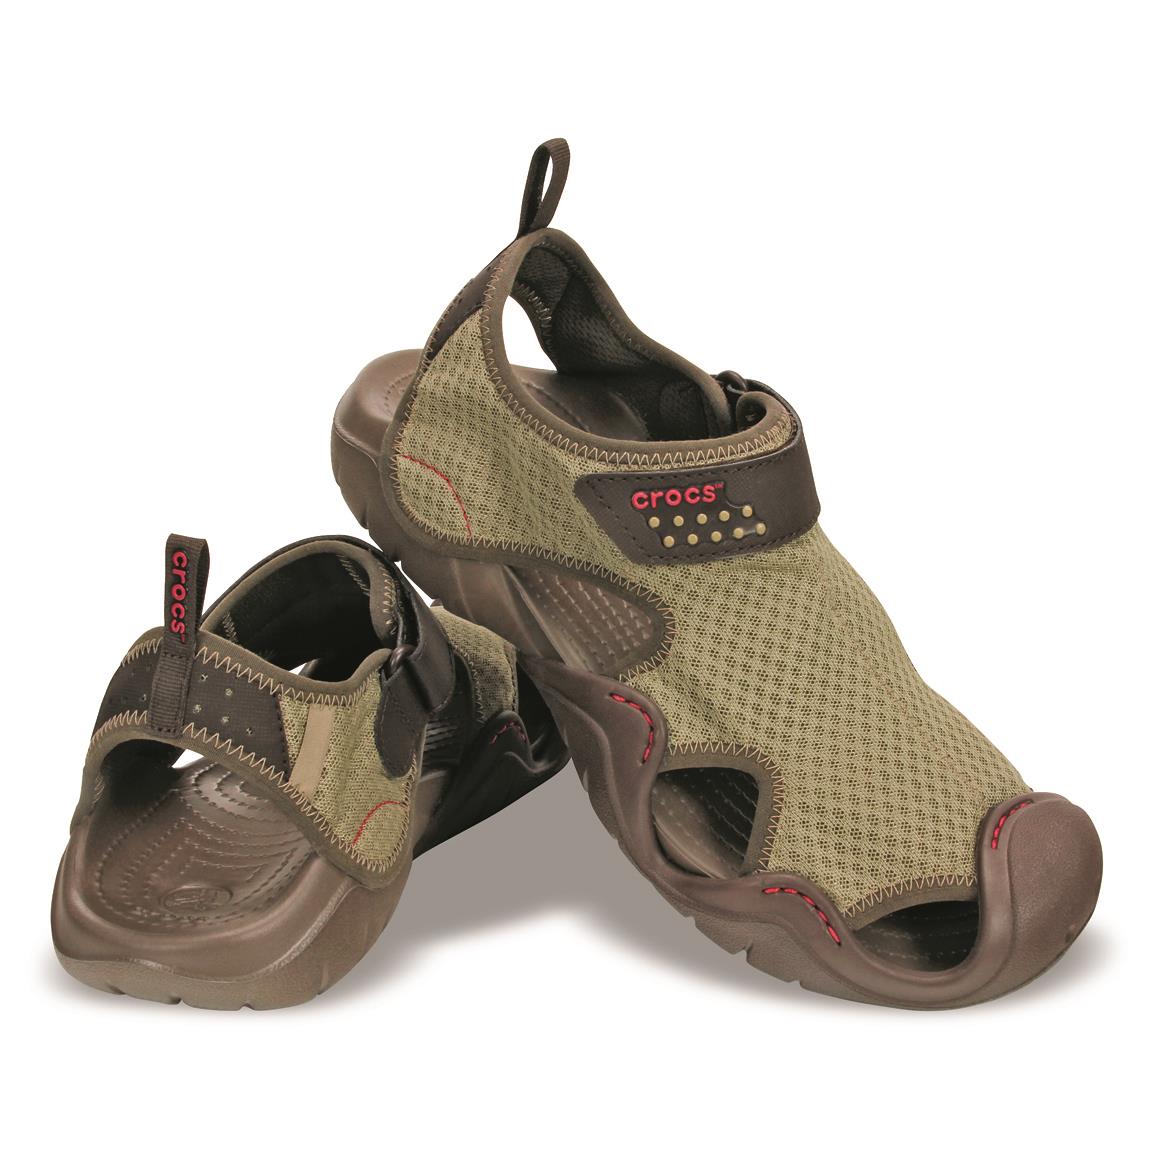  Crocs  Men s  Swiftwater Sandals  620895 Sandals  Flip 